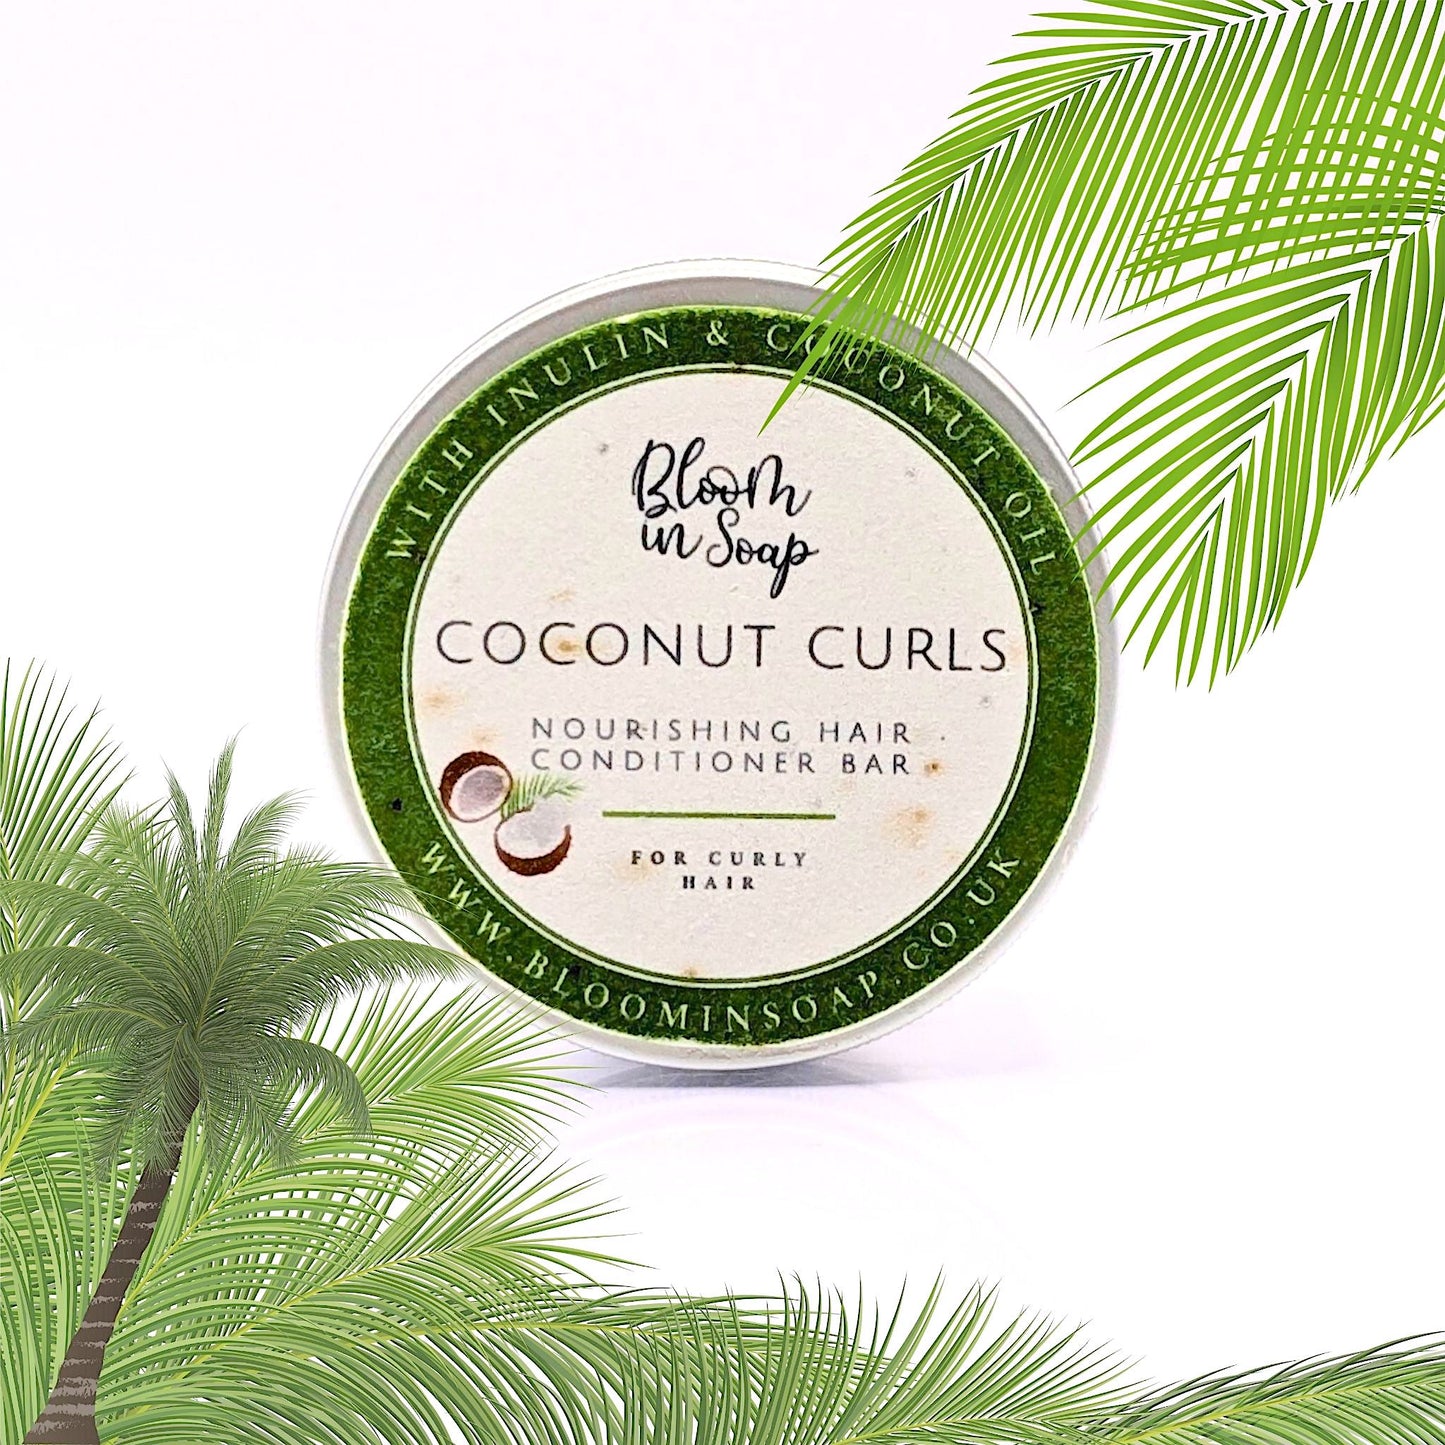 Coconut Curls conditioner bar